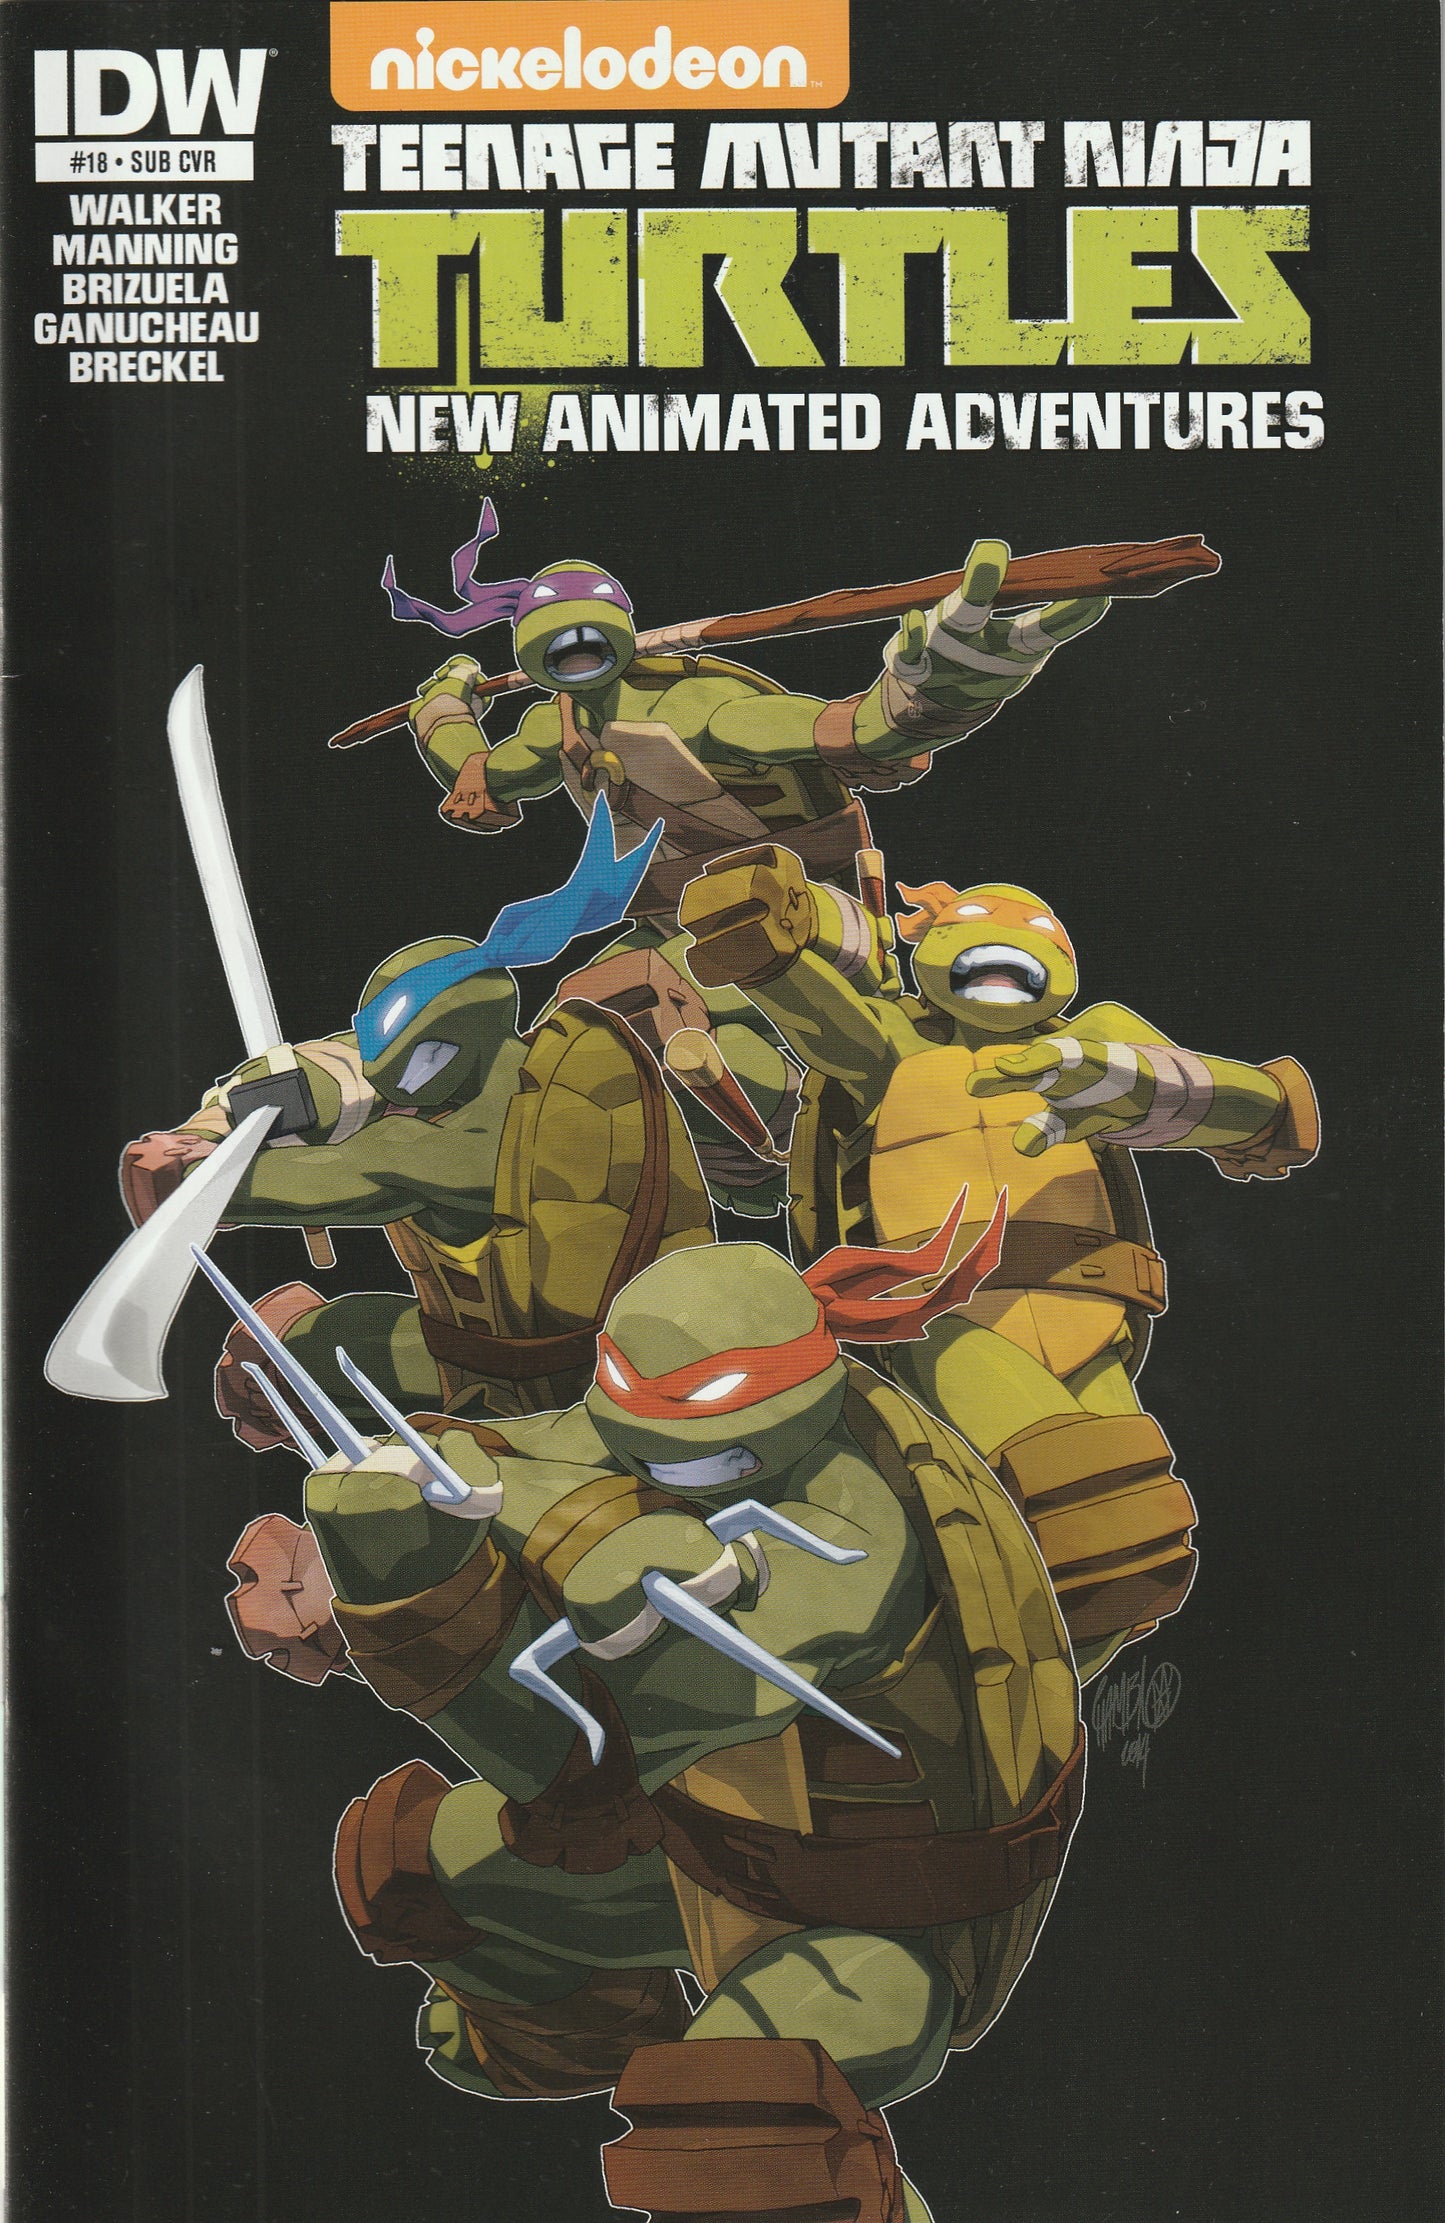 Teenage Mutant Ninja Turtles New Animated Adventures #18 (2014) - Dario Brizuela Subscription Variant Cover